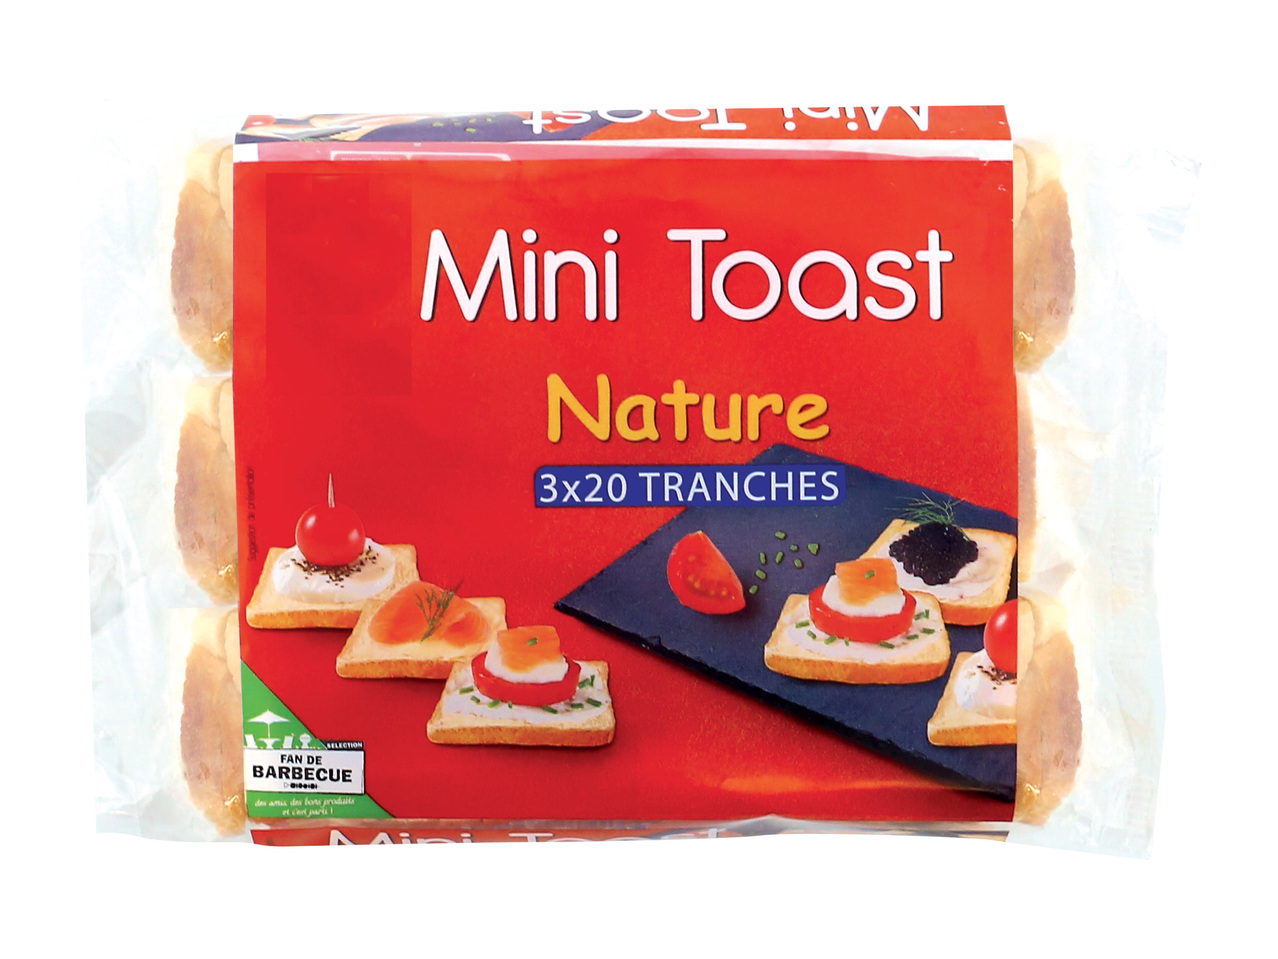 Mini toast nature1